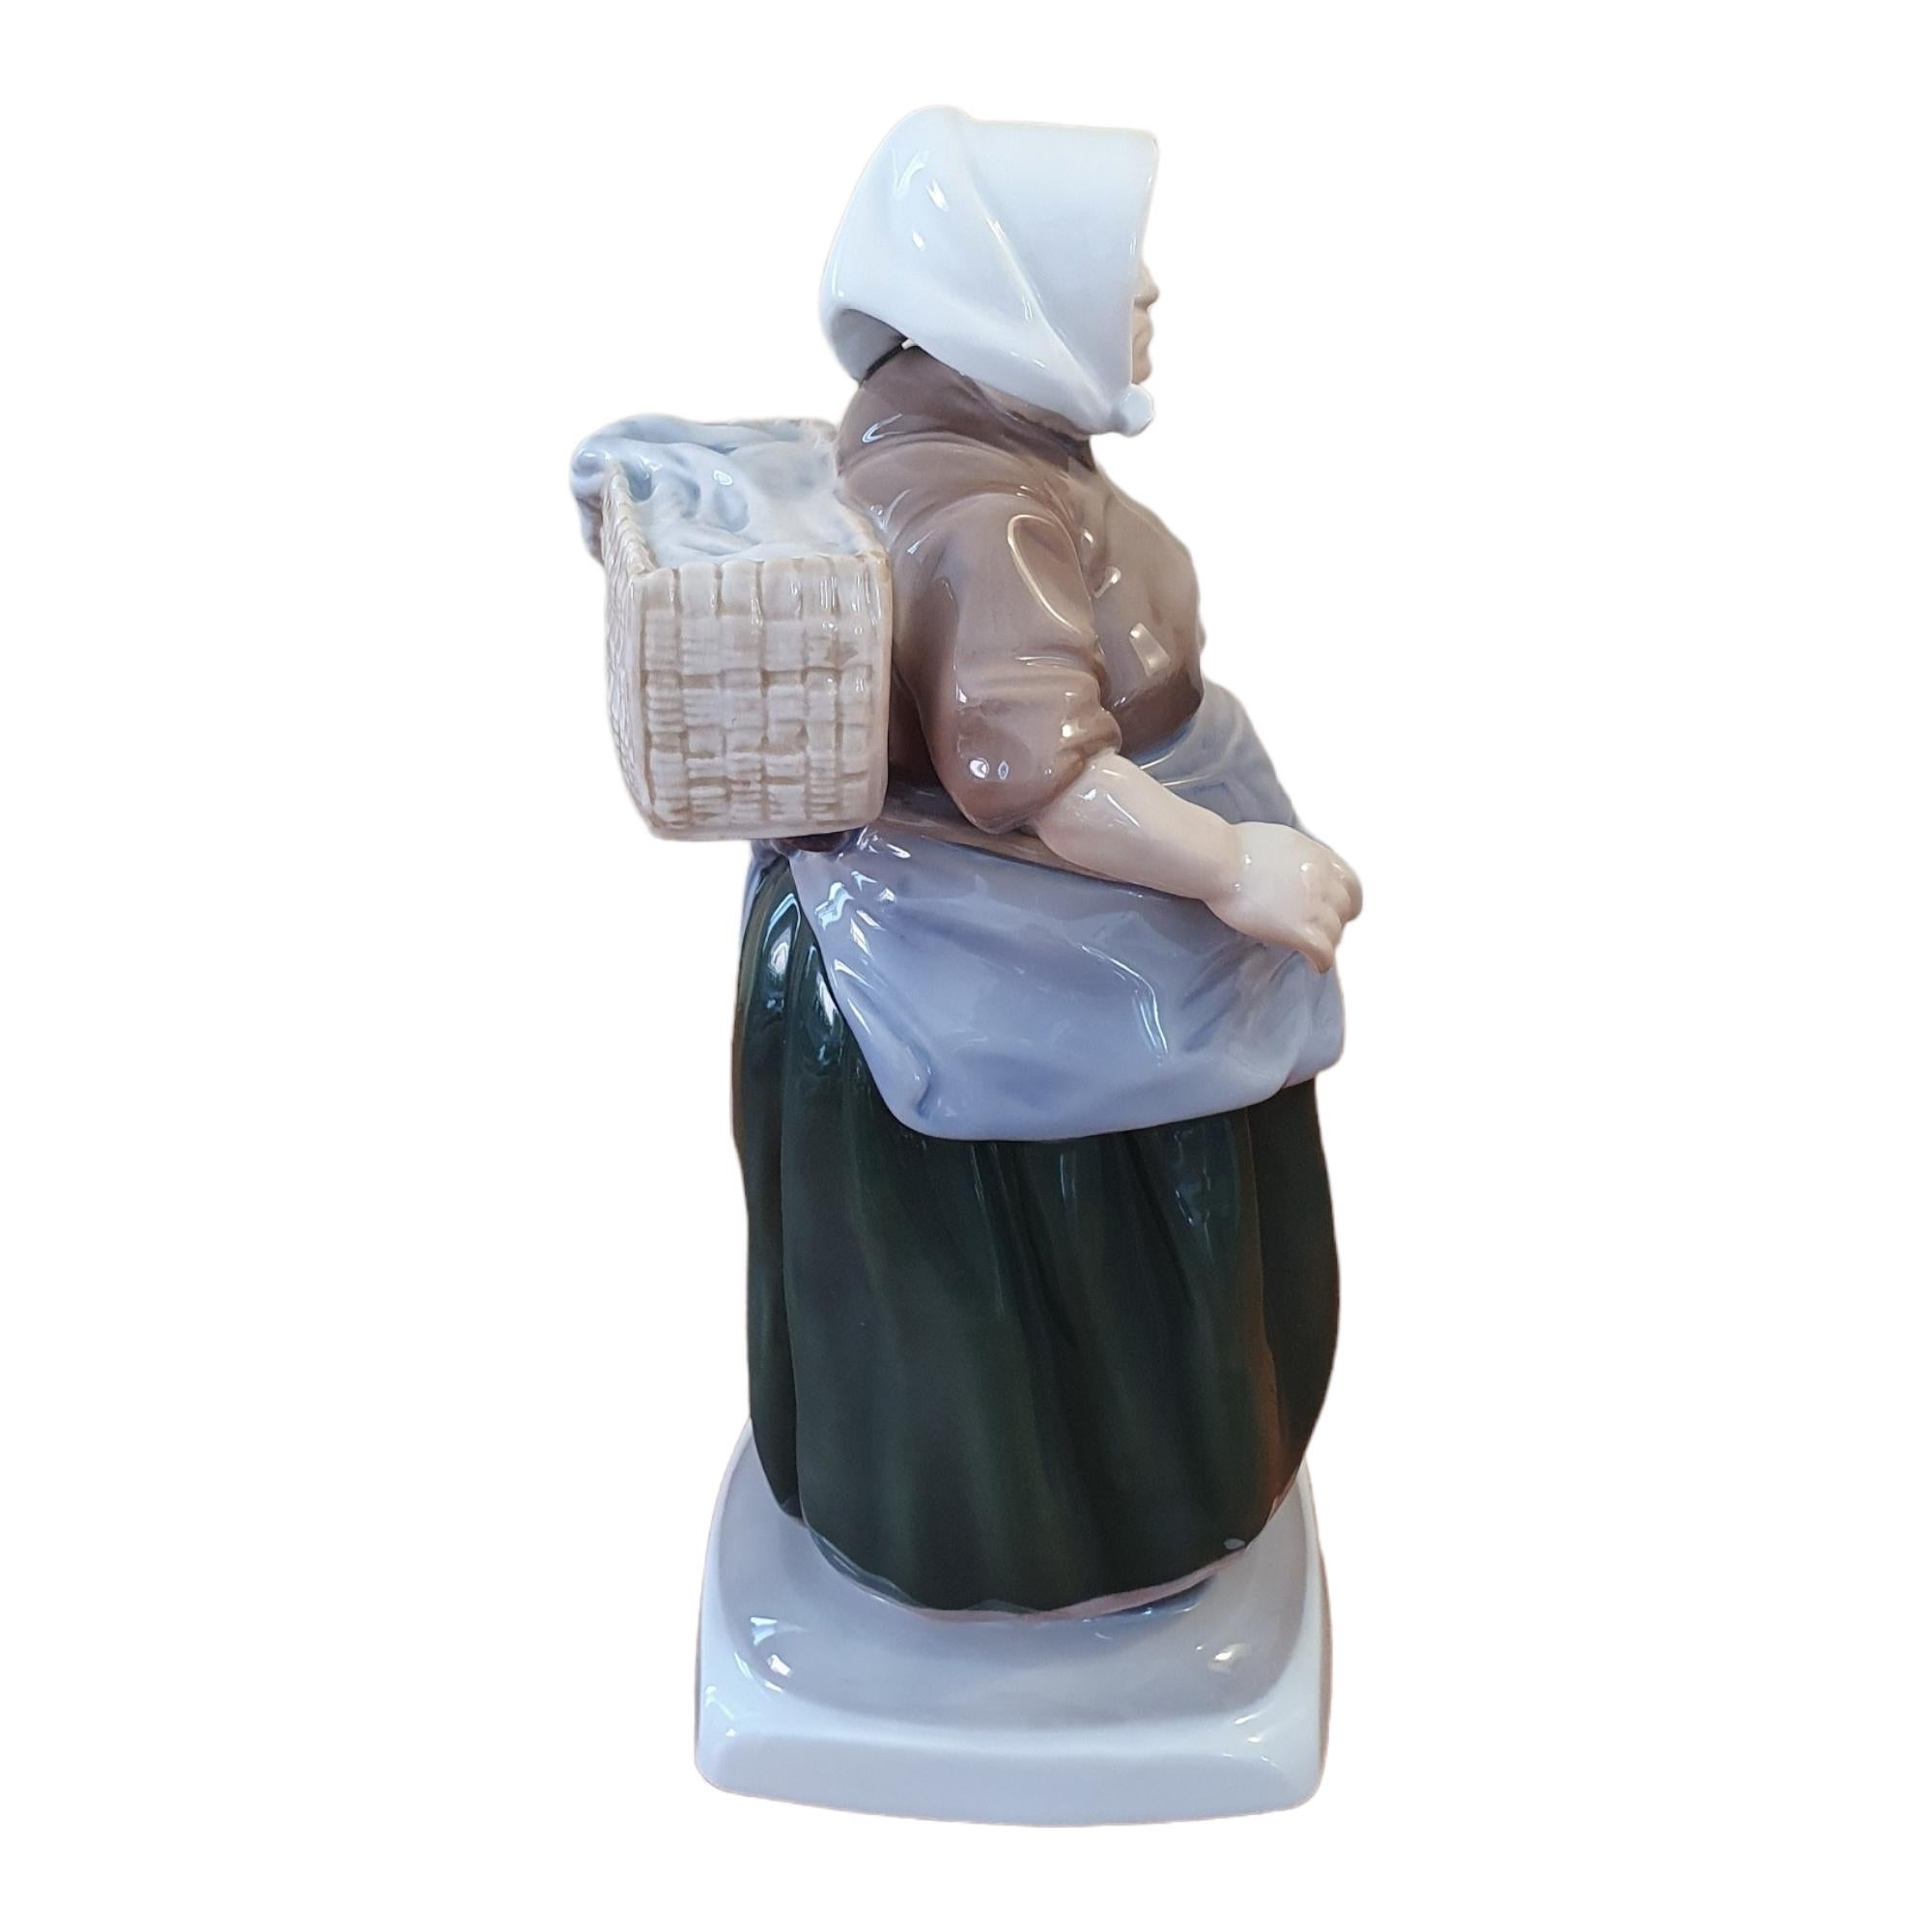 Glazed 20th century glazed Porcelain Fishermans Wife figurine For Sale